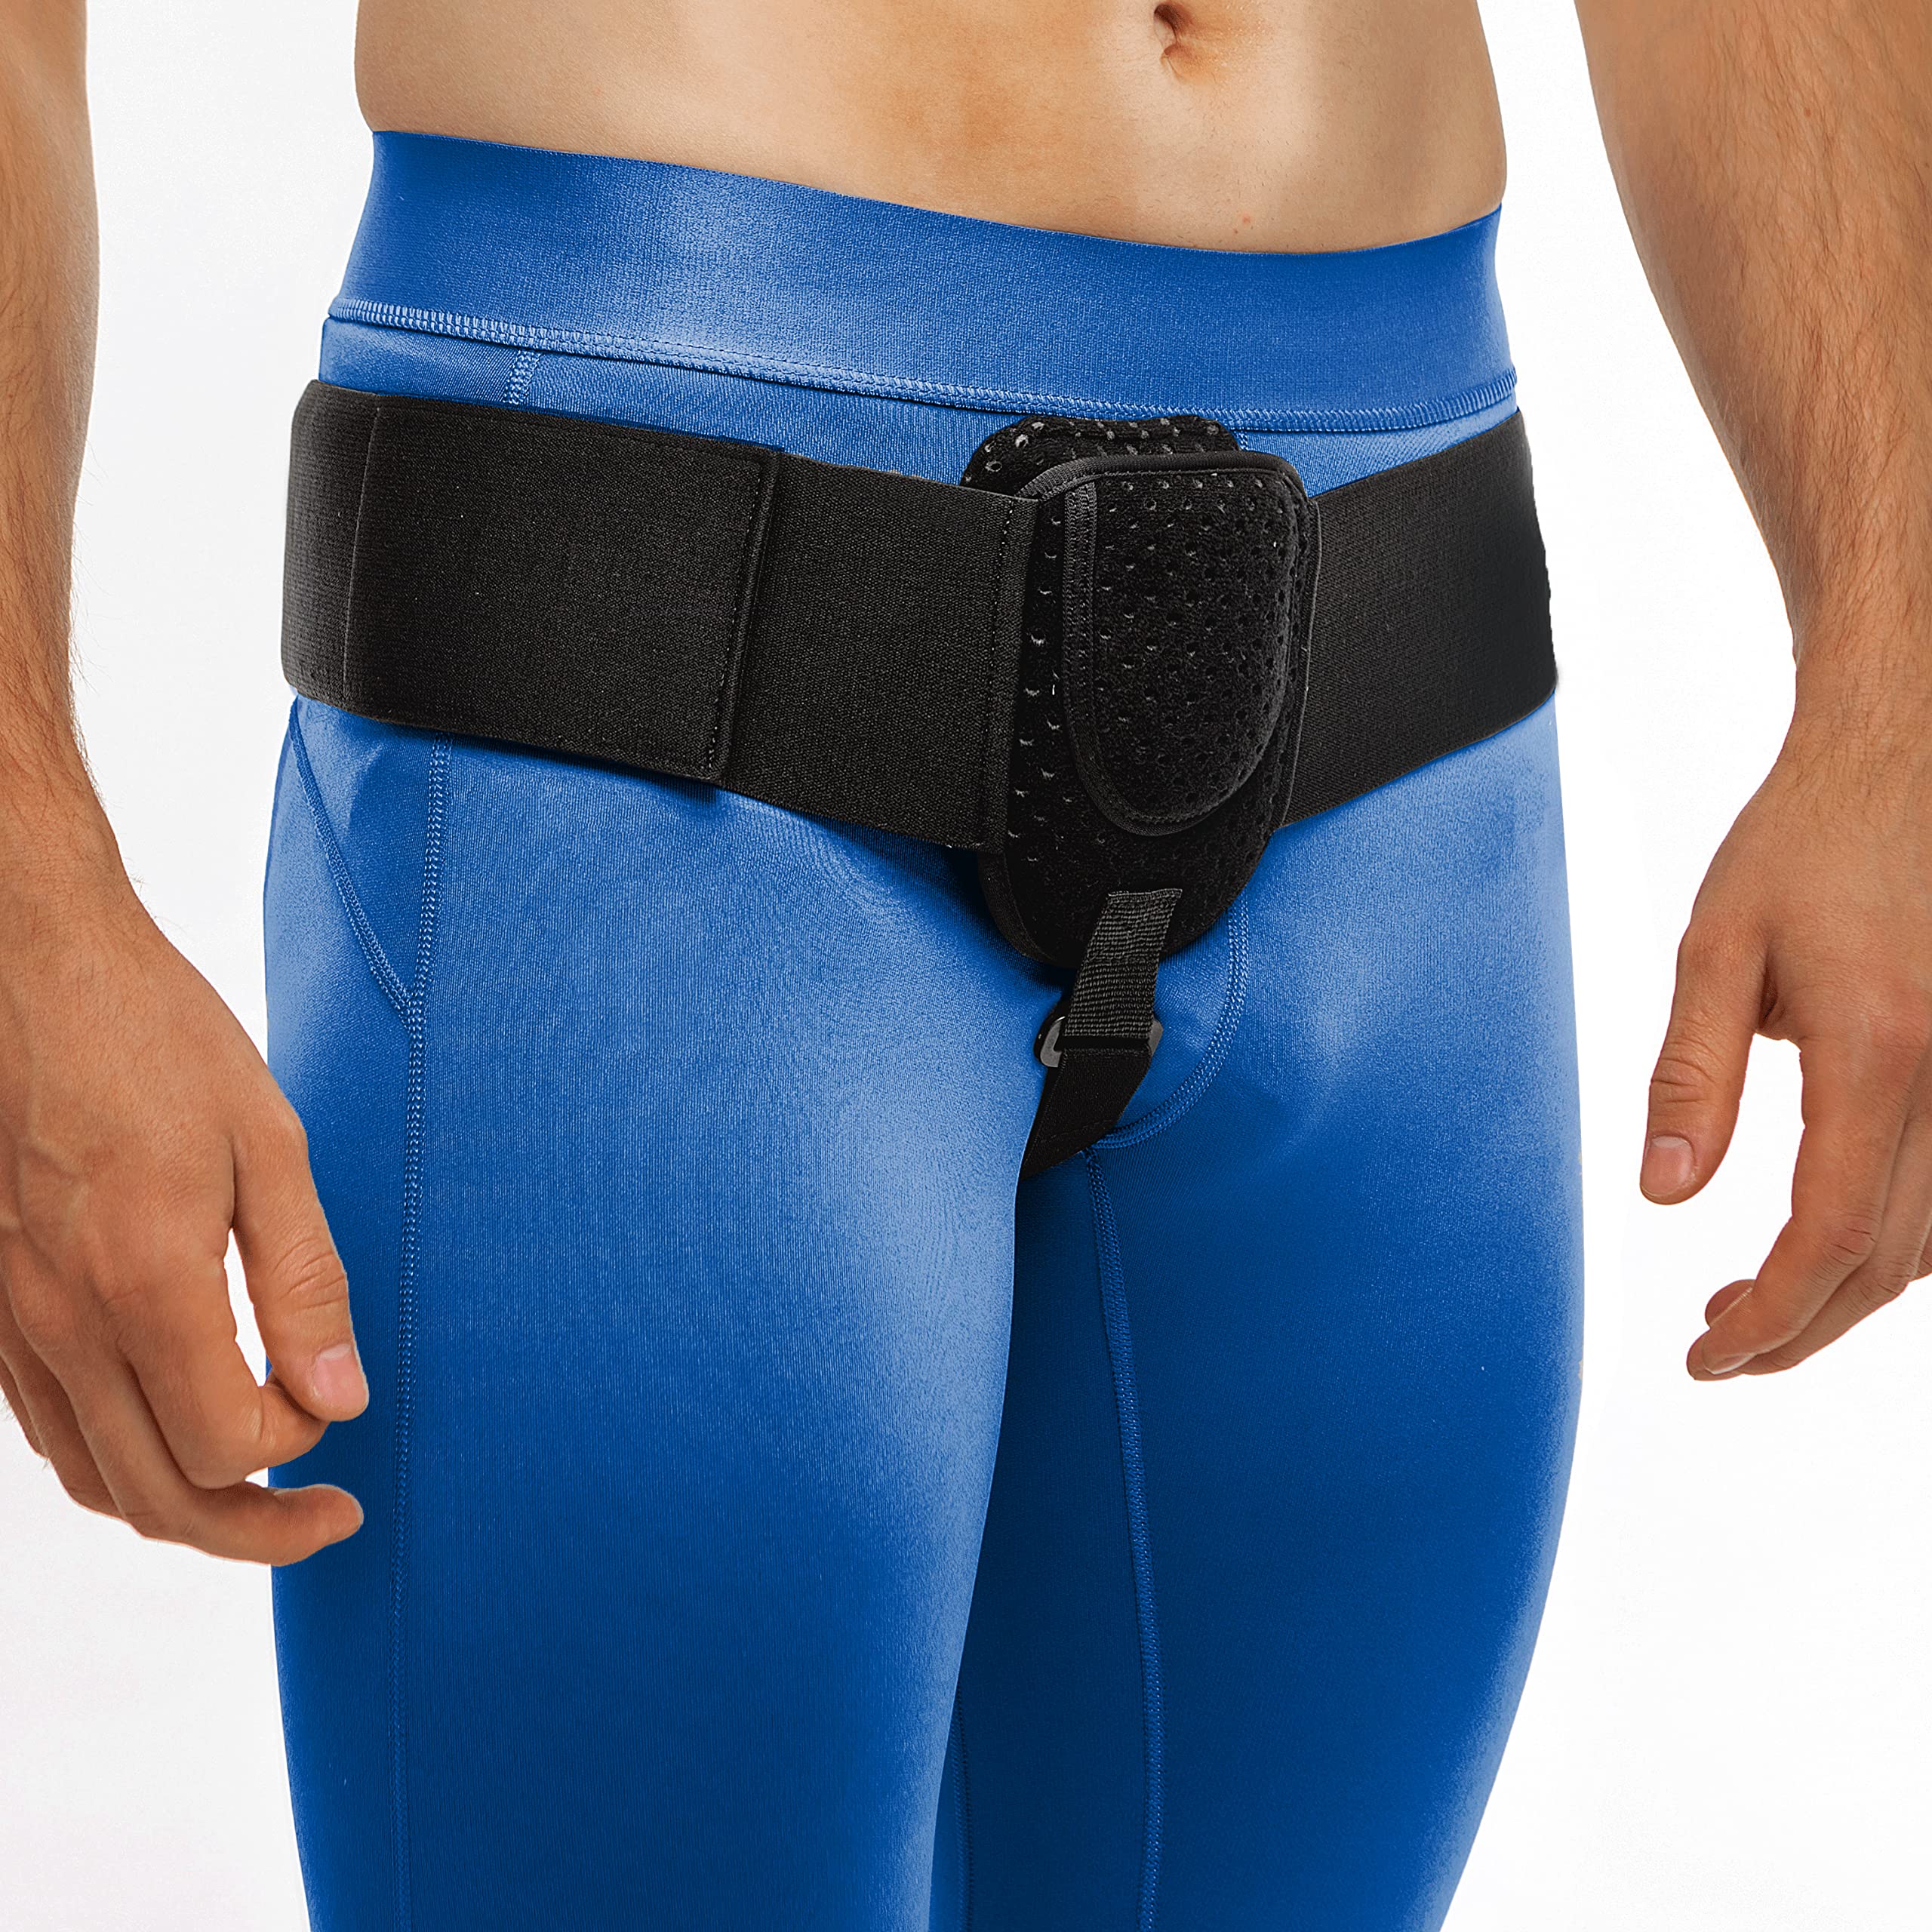 Hernia Belt for Men Women Inguinal Hernia Belt Back Support Truss